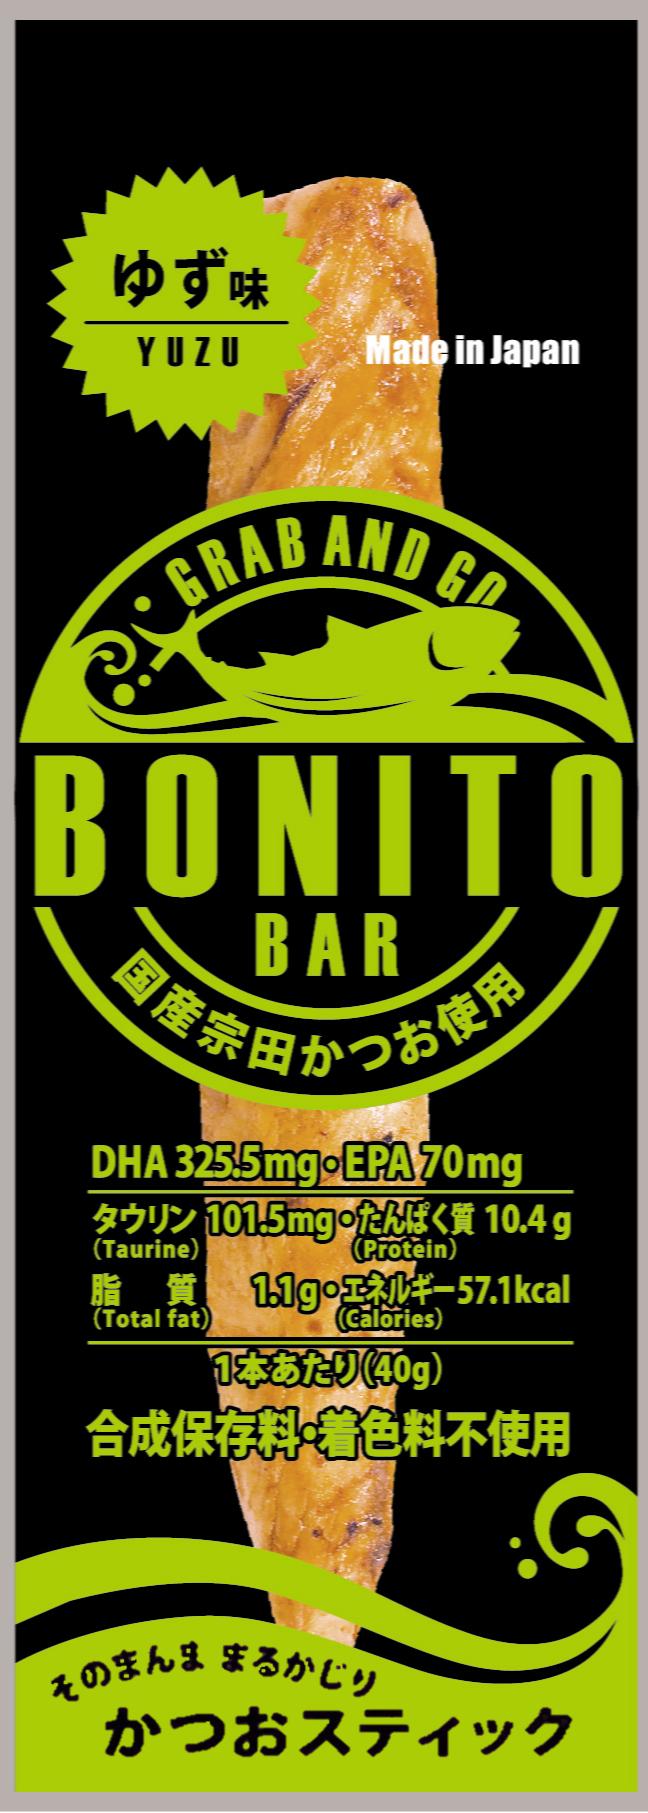 BONITO BAR　ゆず味